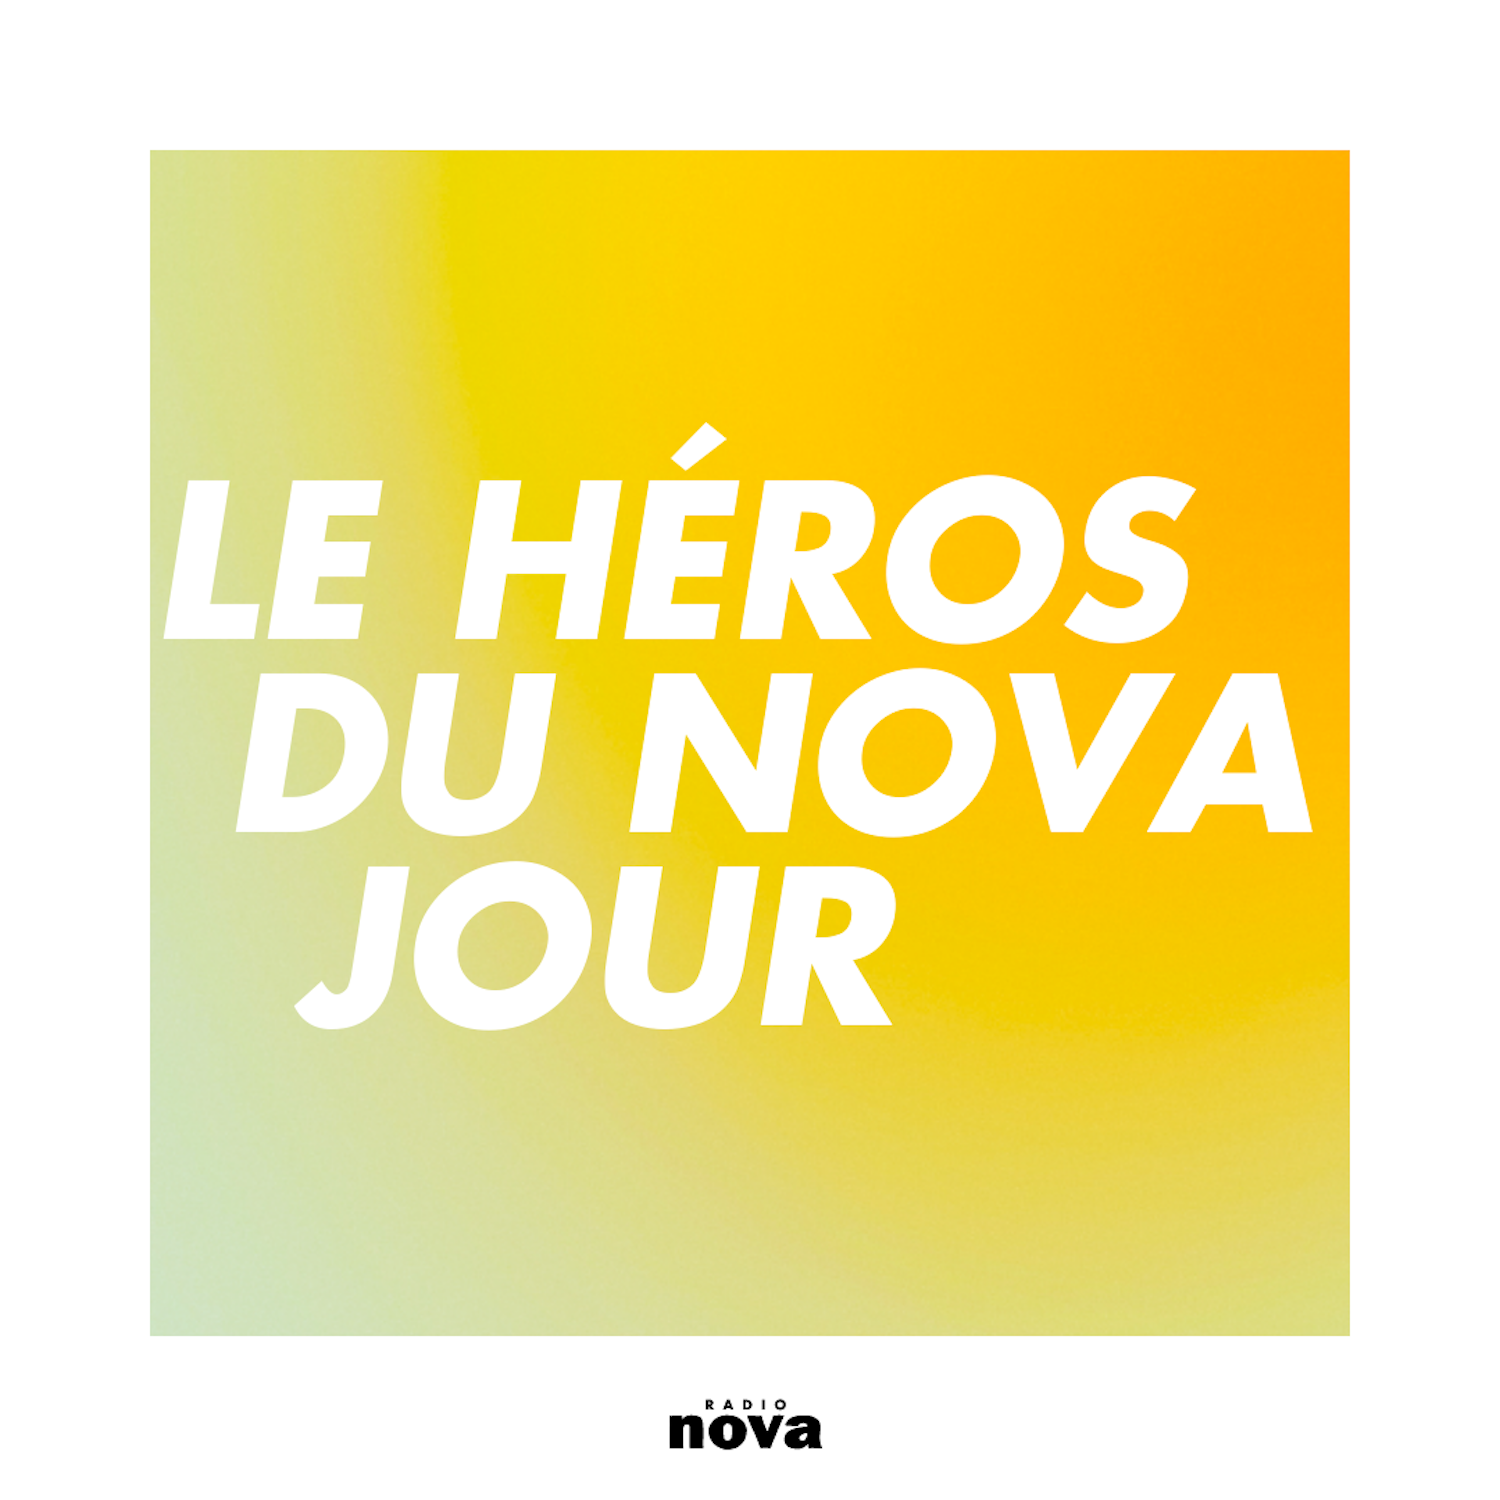 Le Héros du Nova jour